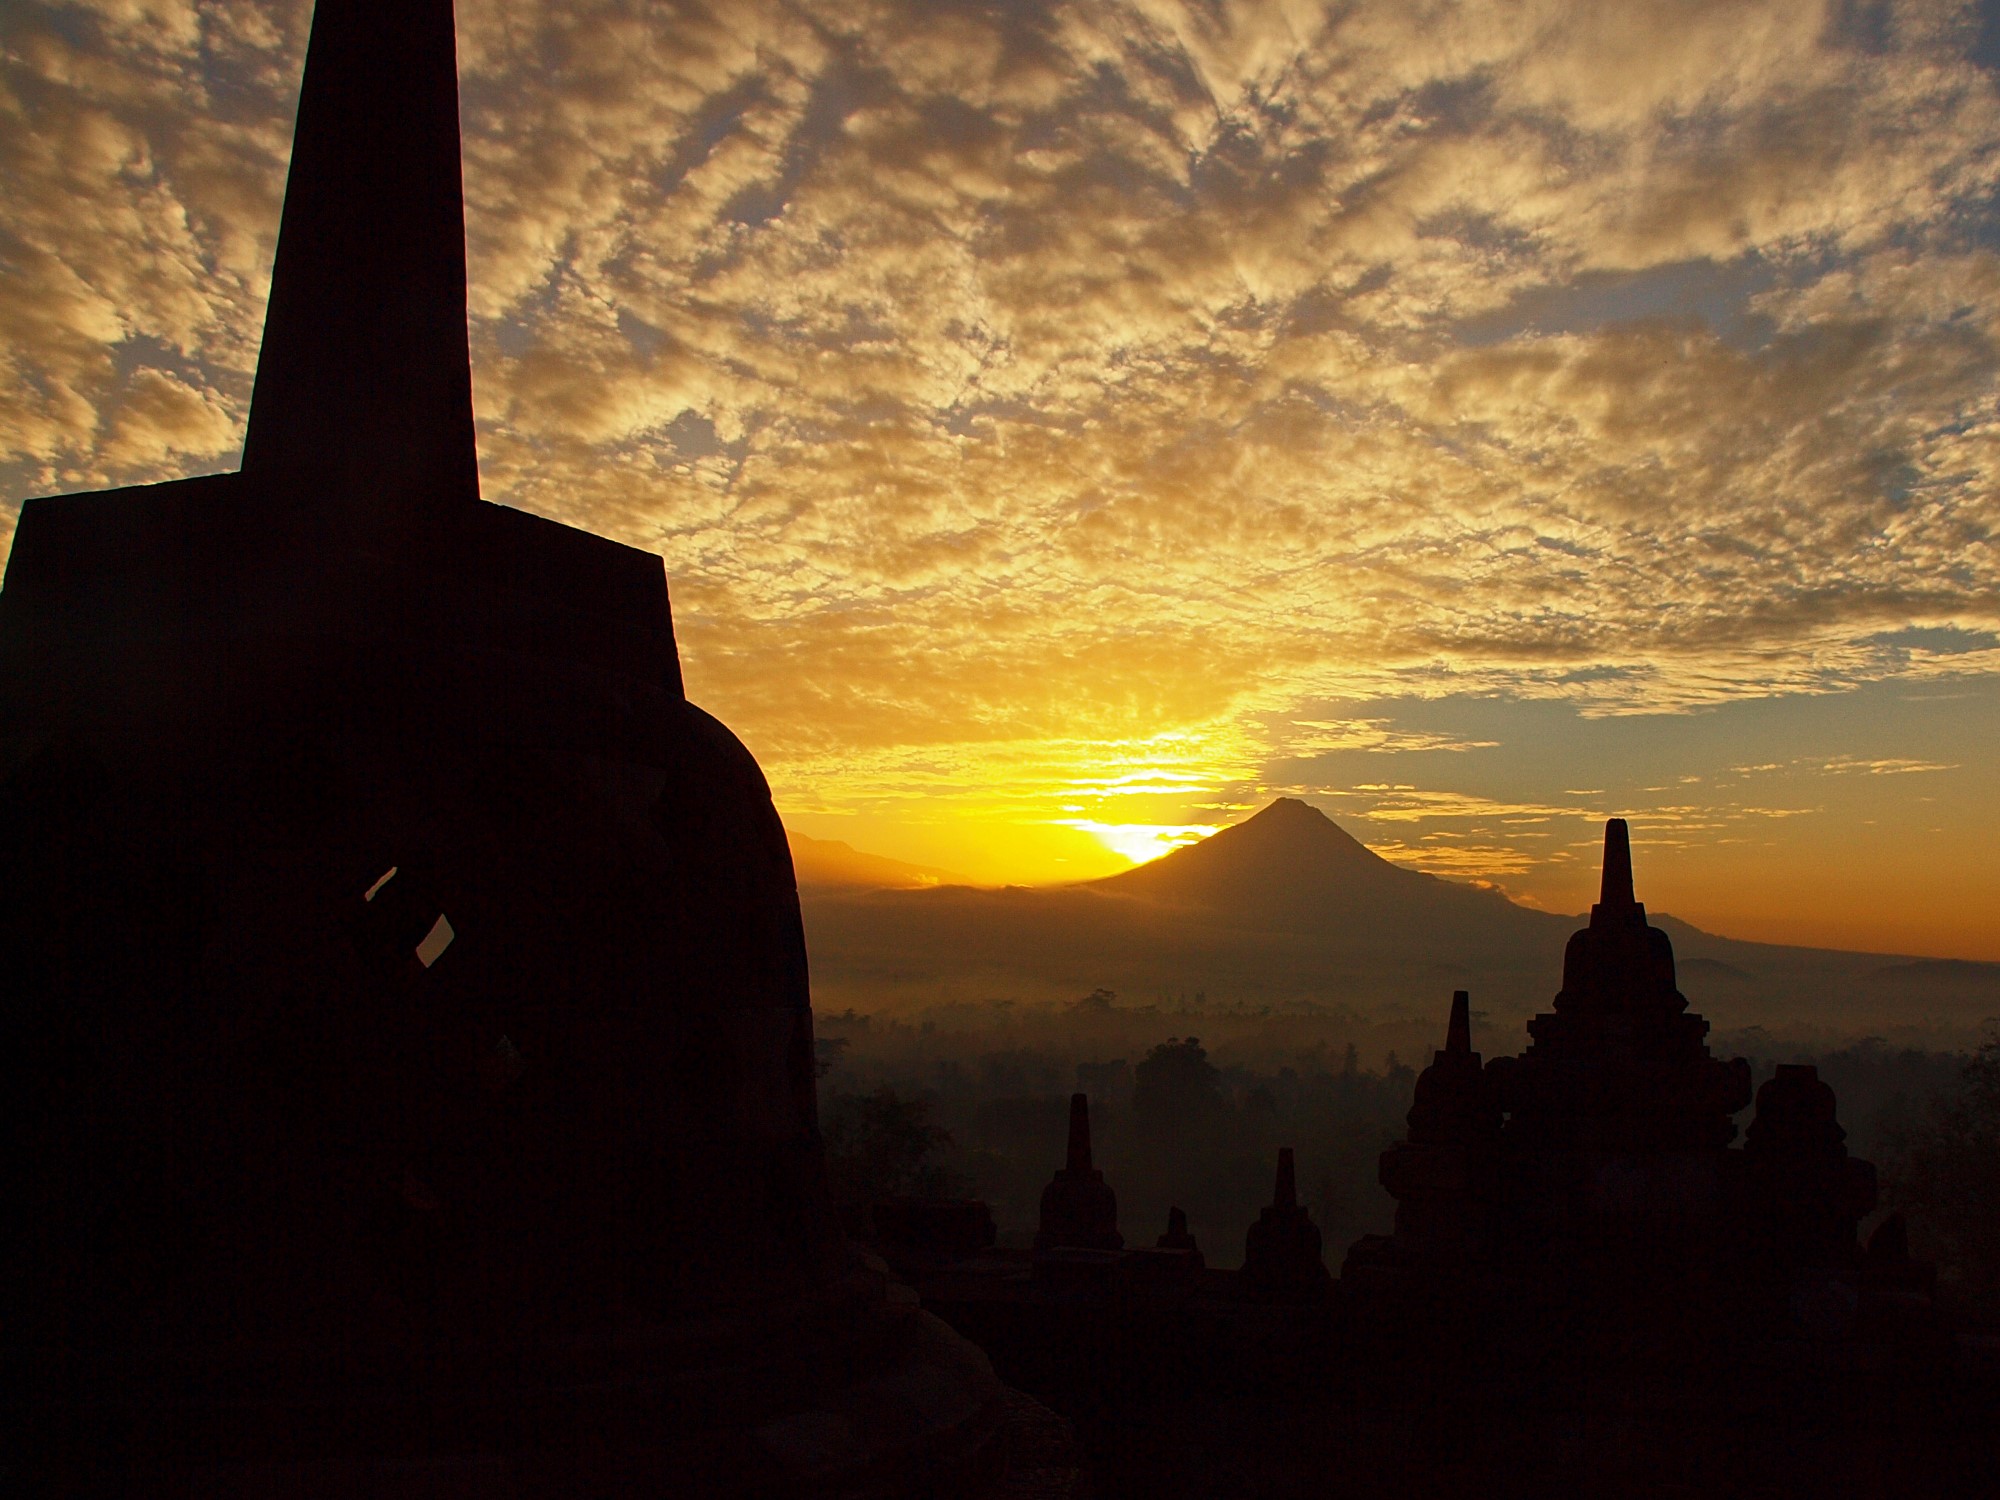 Borobudur 3